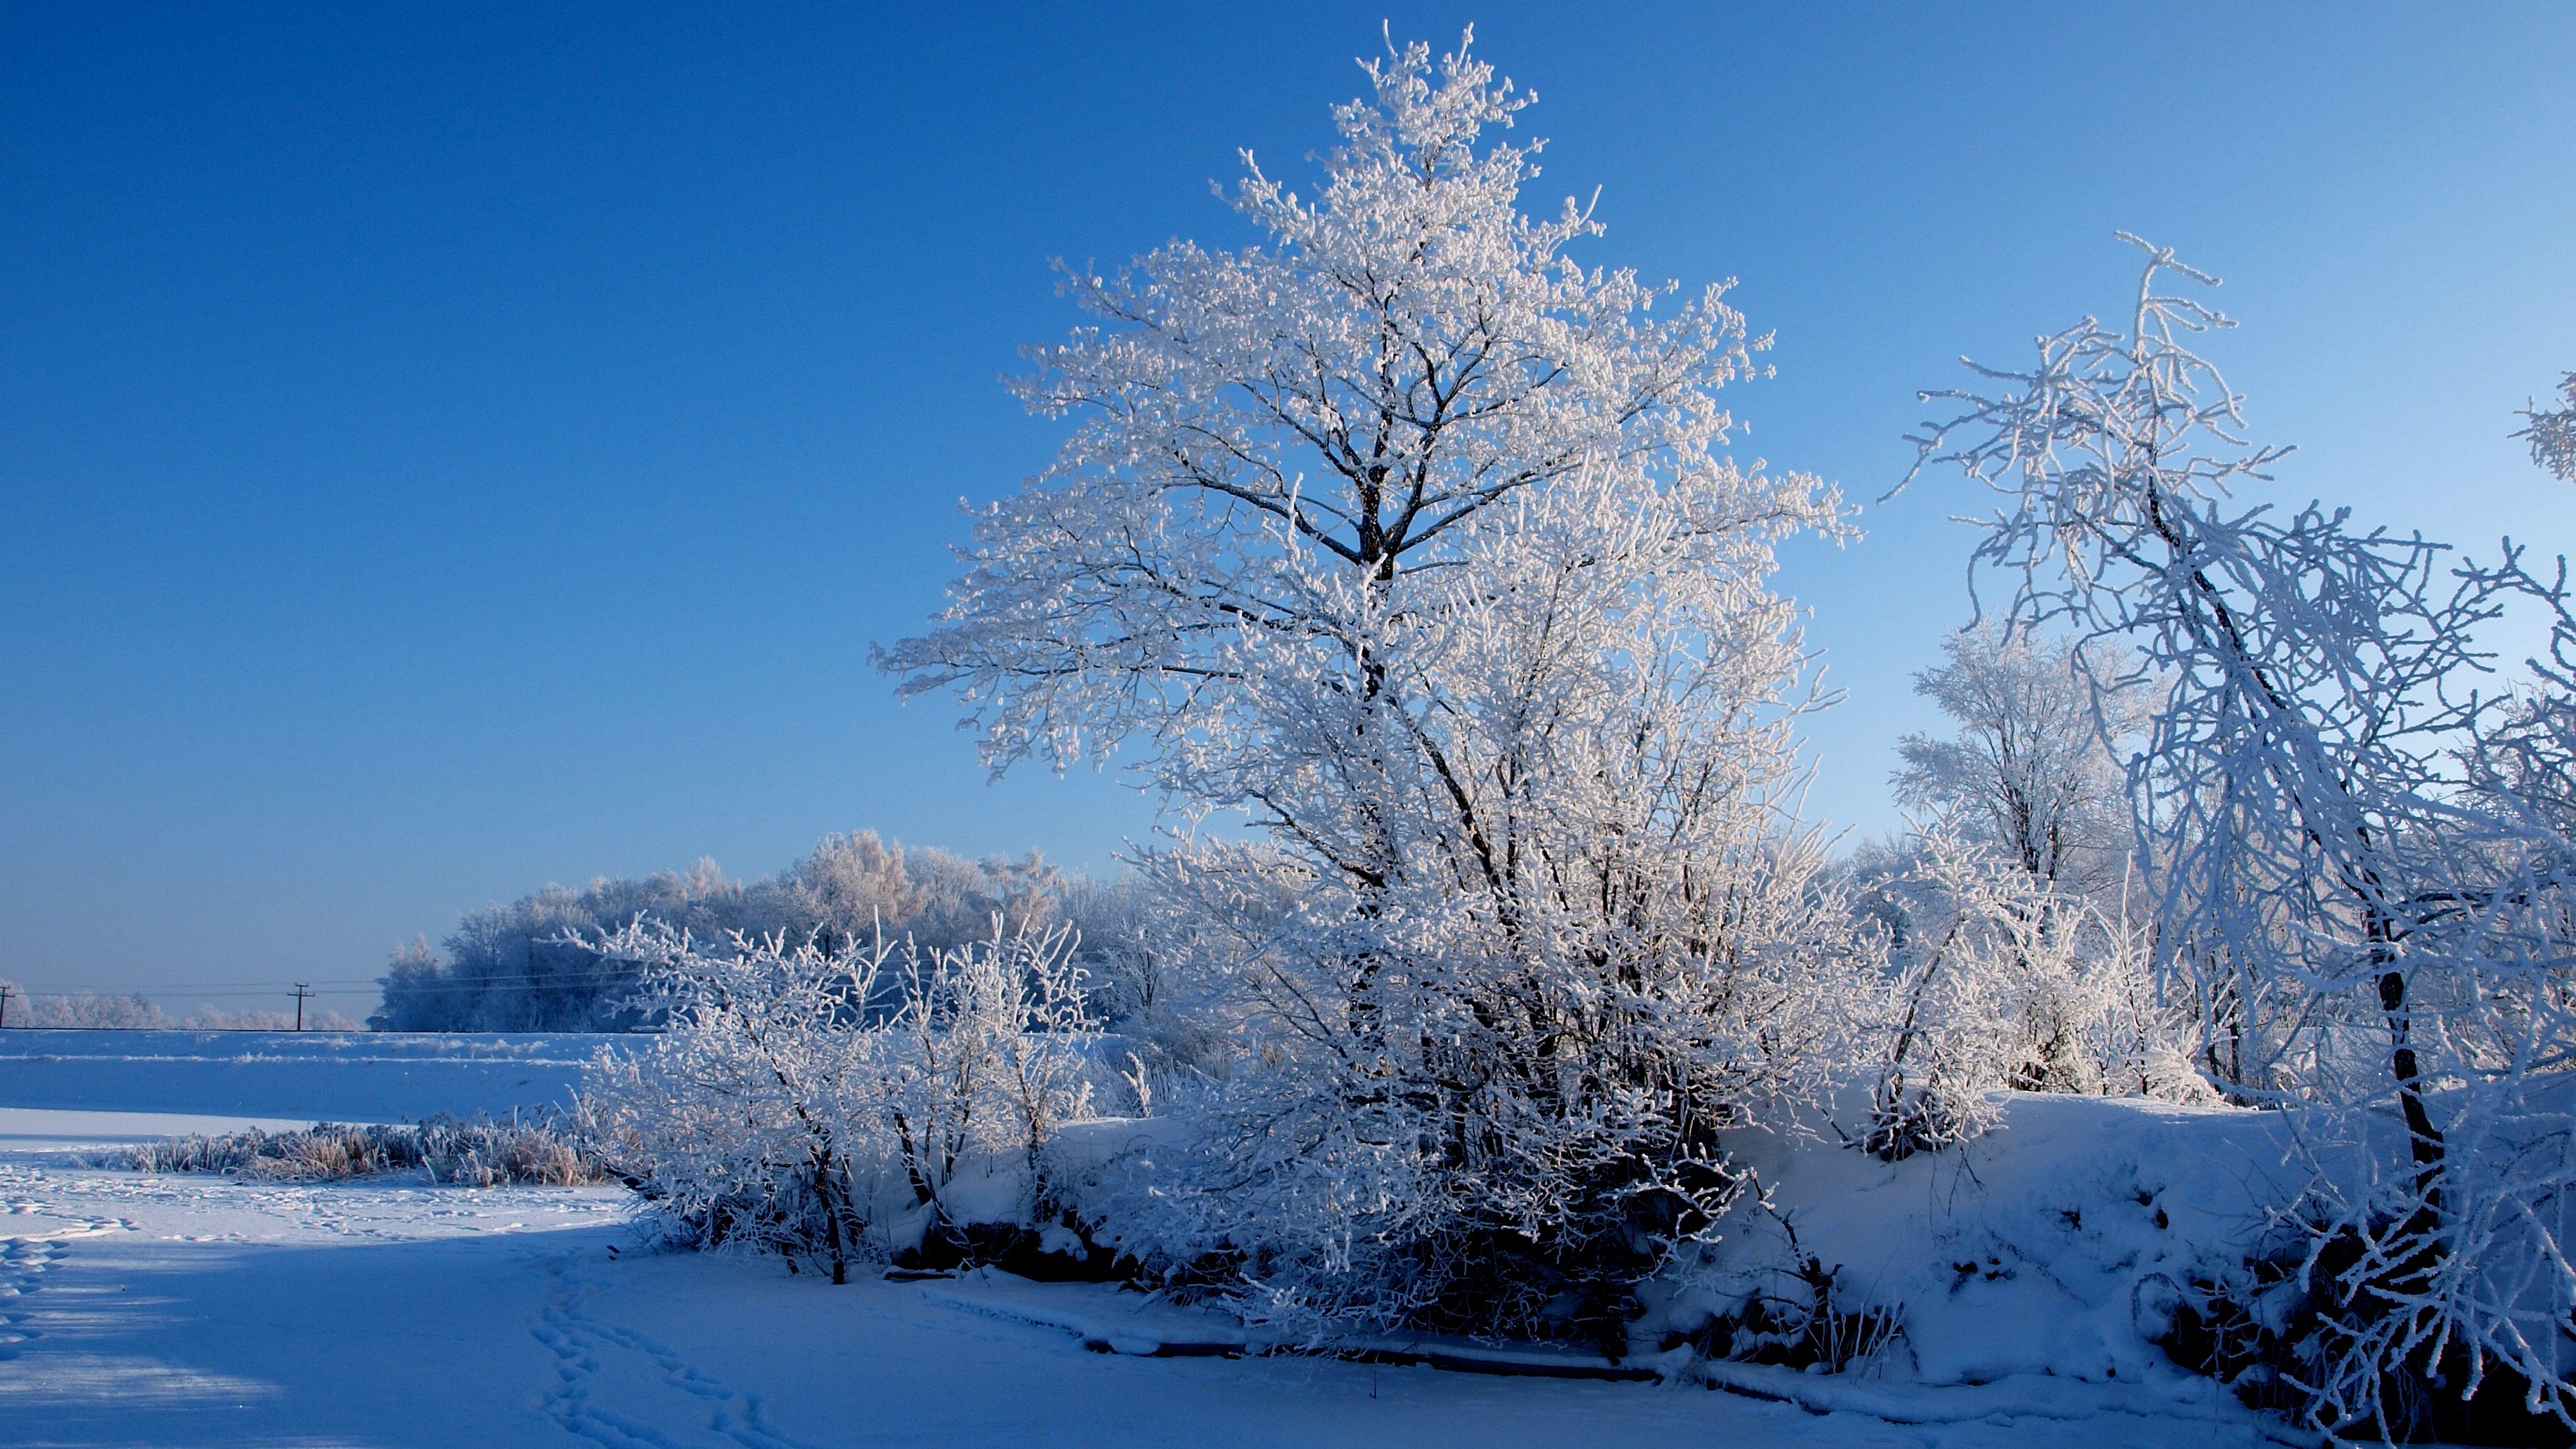 Скачать обои бесплатно Зима, Снег, Дерево, Земля/природа картинка на рабочий стол ПК